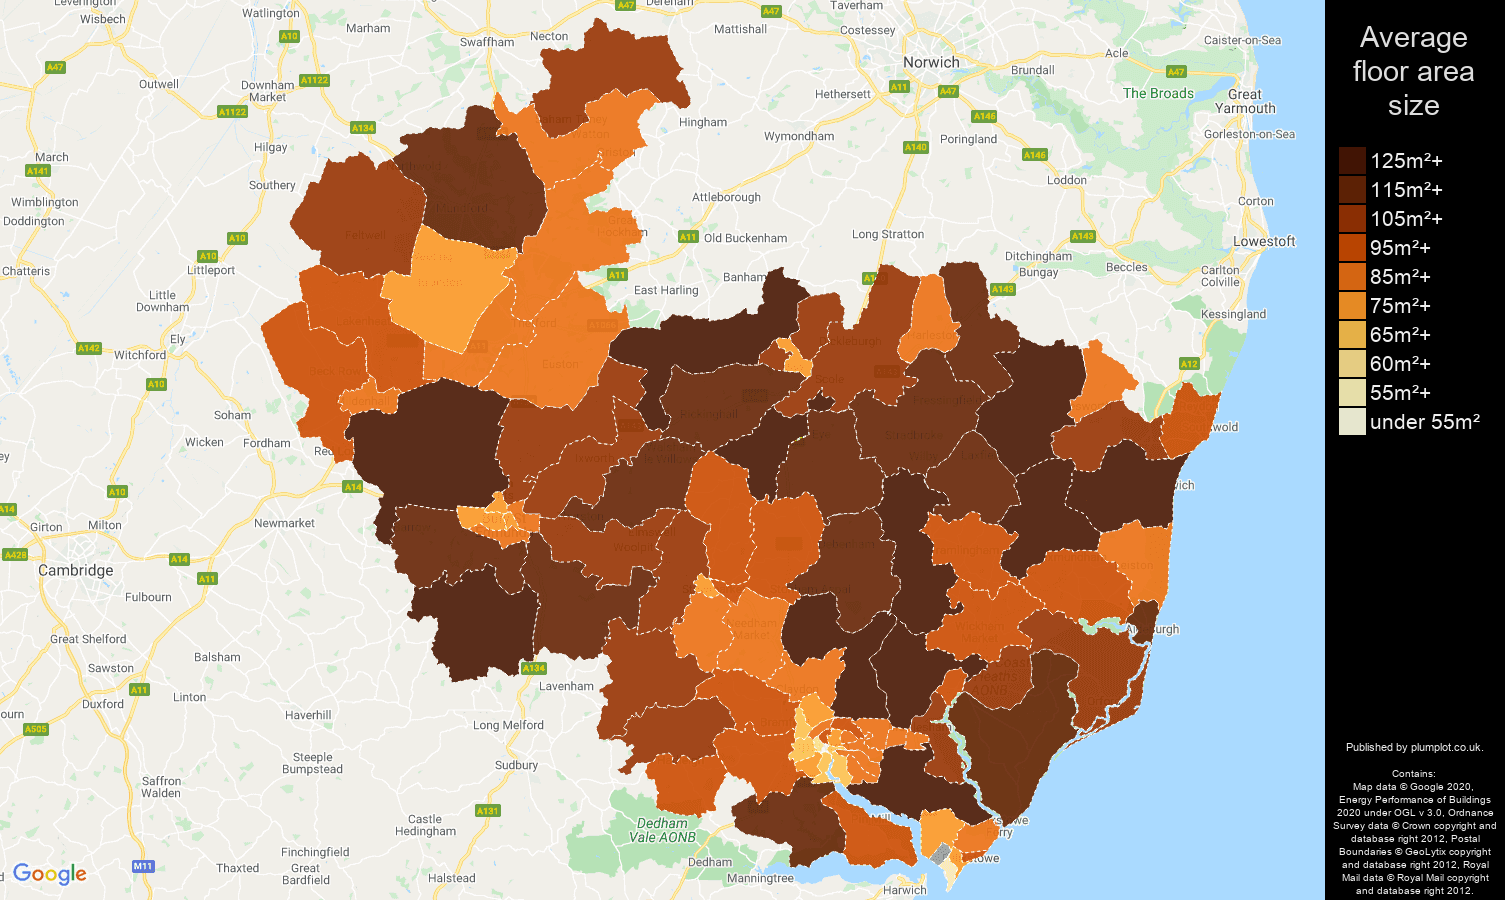 Ipswich map of average floor area size of properties